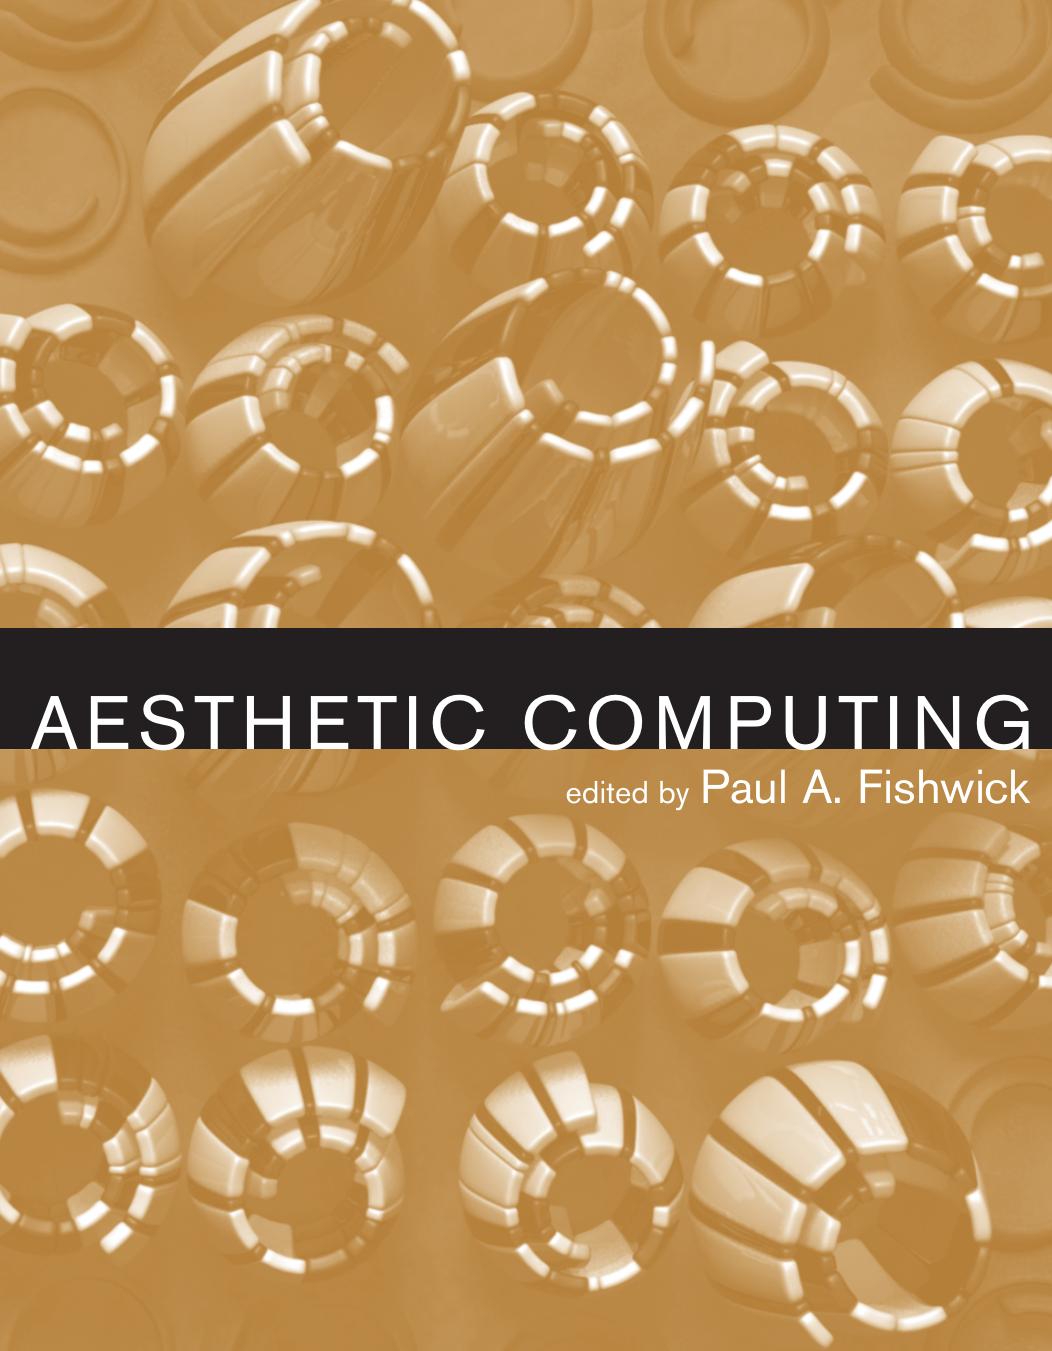 Aesthetic Computing